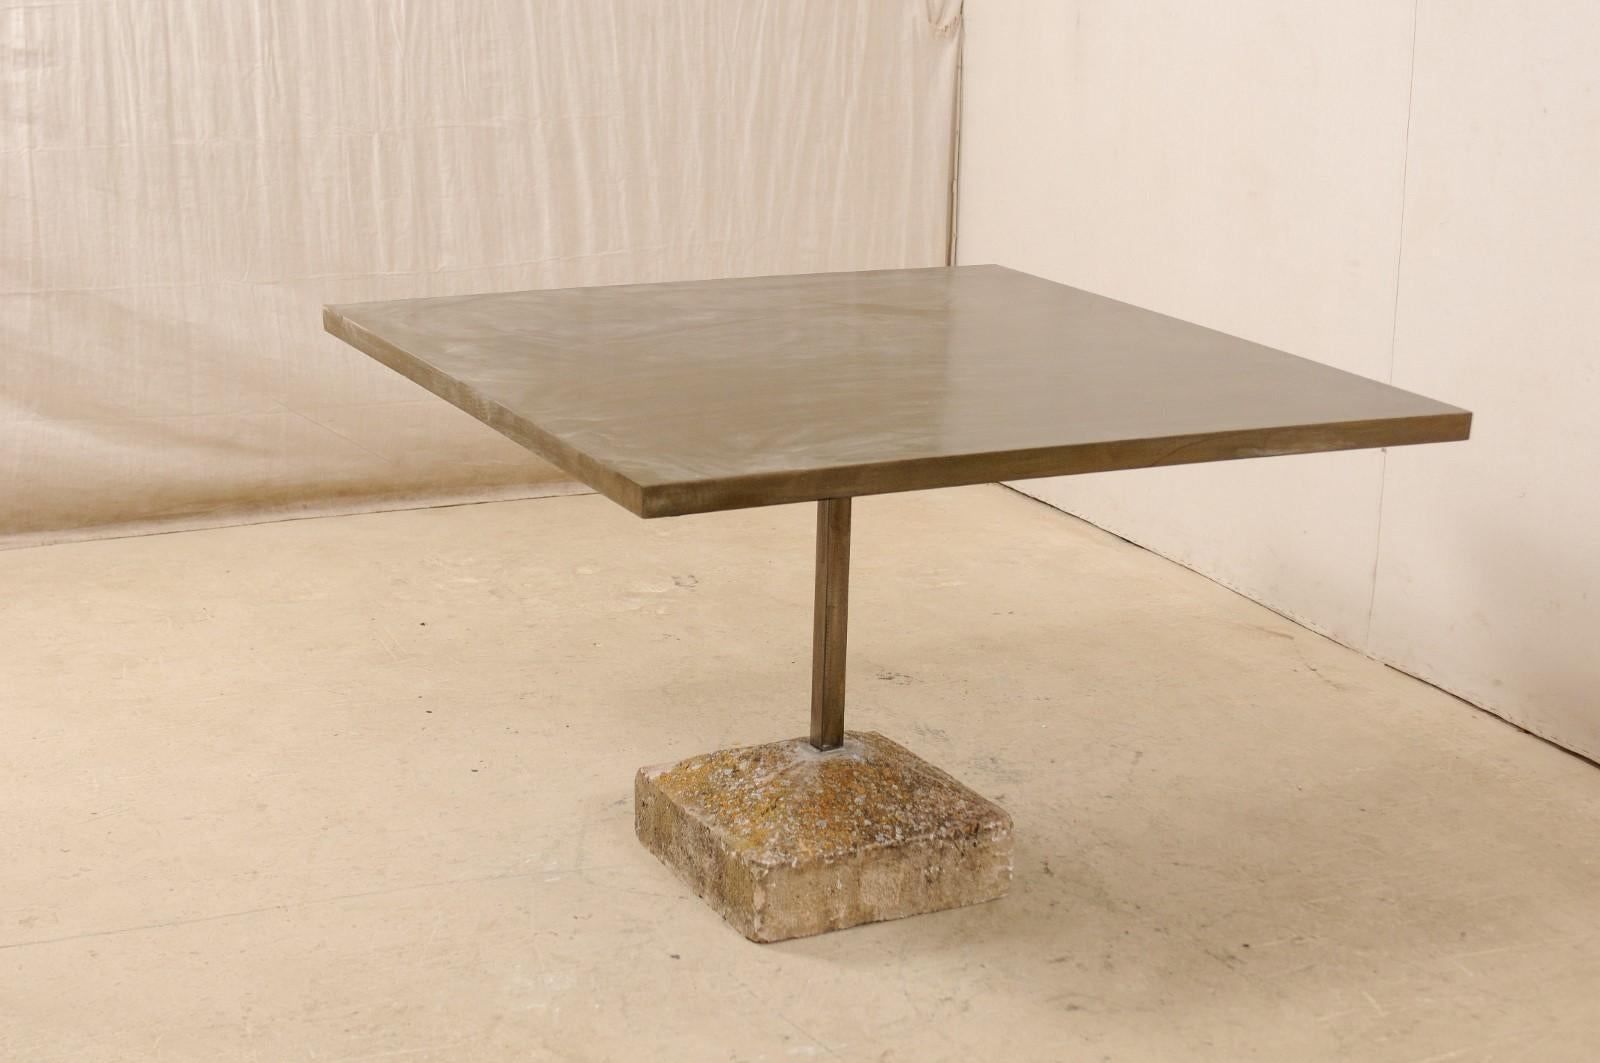 Ein handwerklich hergestellter, quadratischer 4-Fuß-Tisch mit einem alten spanischen Sockel. Dieser Tisch wurde in klaren Linien modern gestaltet und verfügt über eine quadratische, patinierte Eisenplatte mit einer quadratischen Eisensäule in der